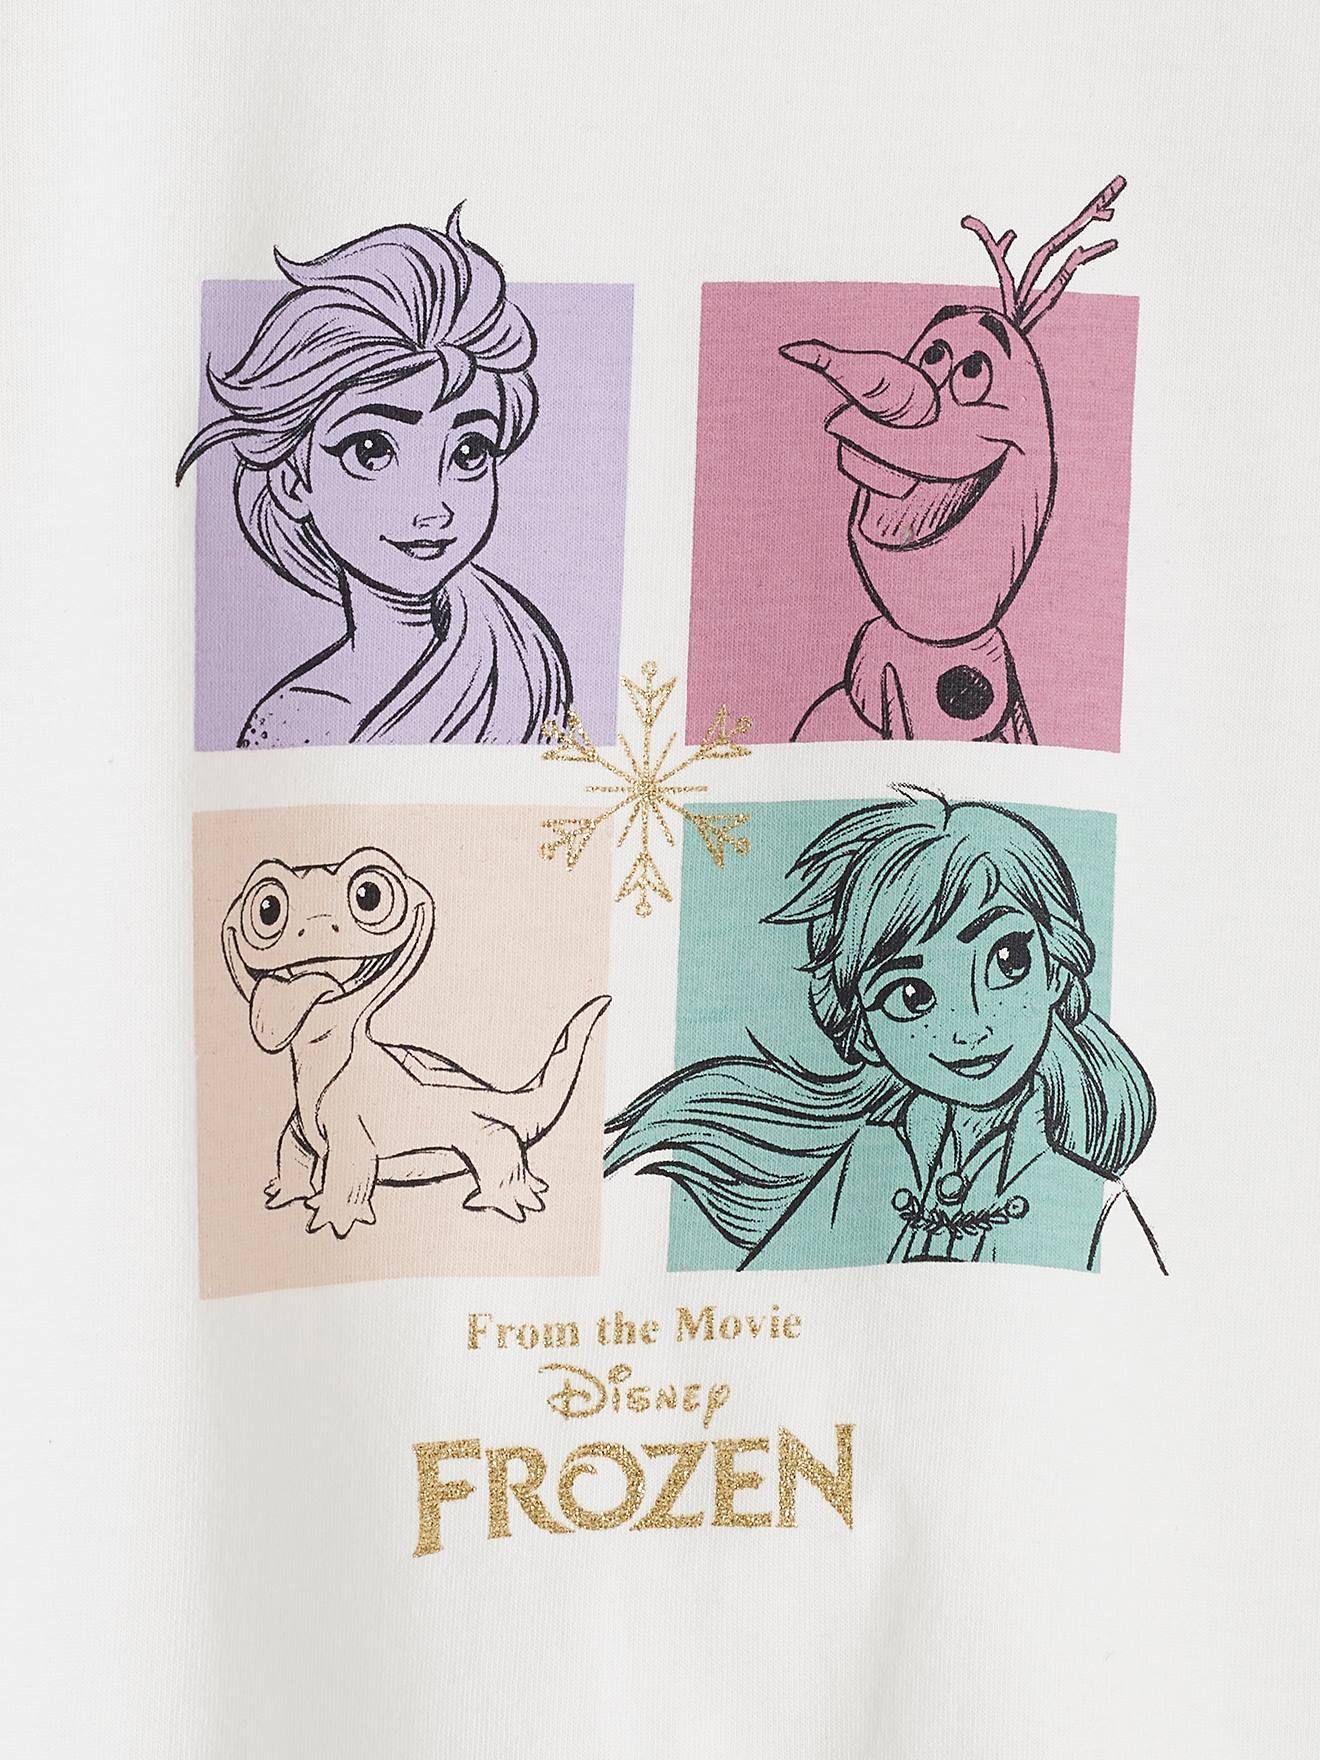 Disney La Reine Des Neiges 2 - Gommettes pour les petits (Elsa